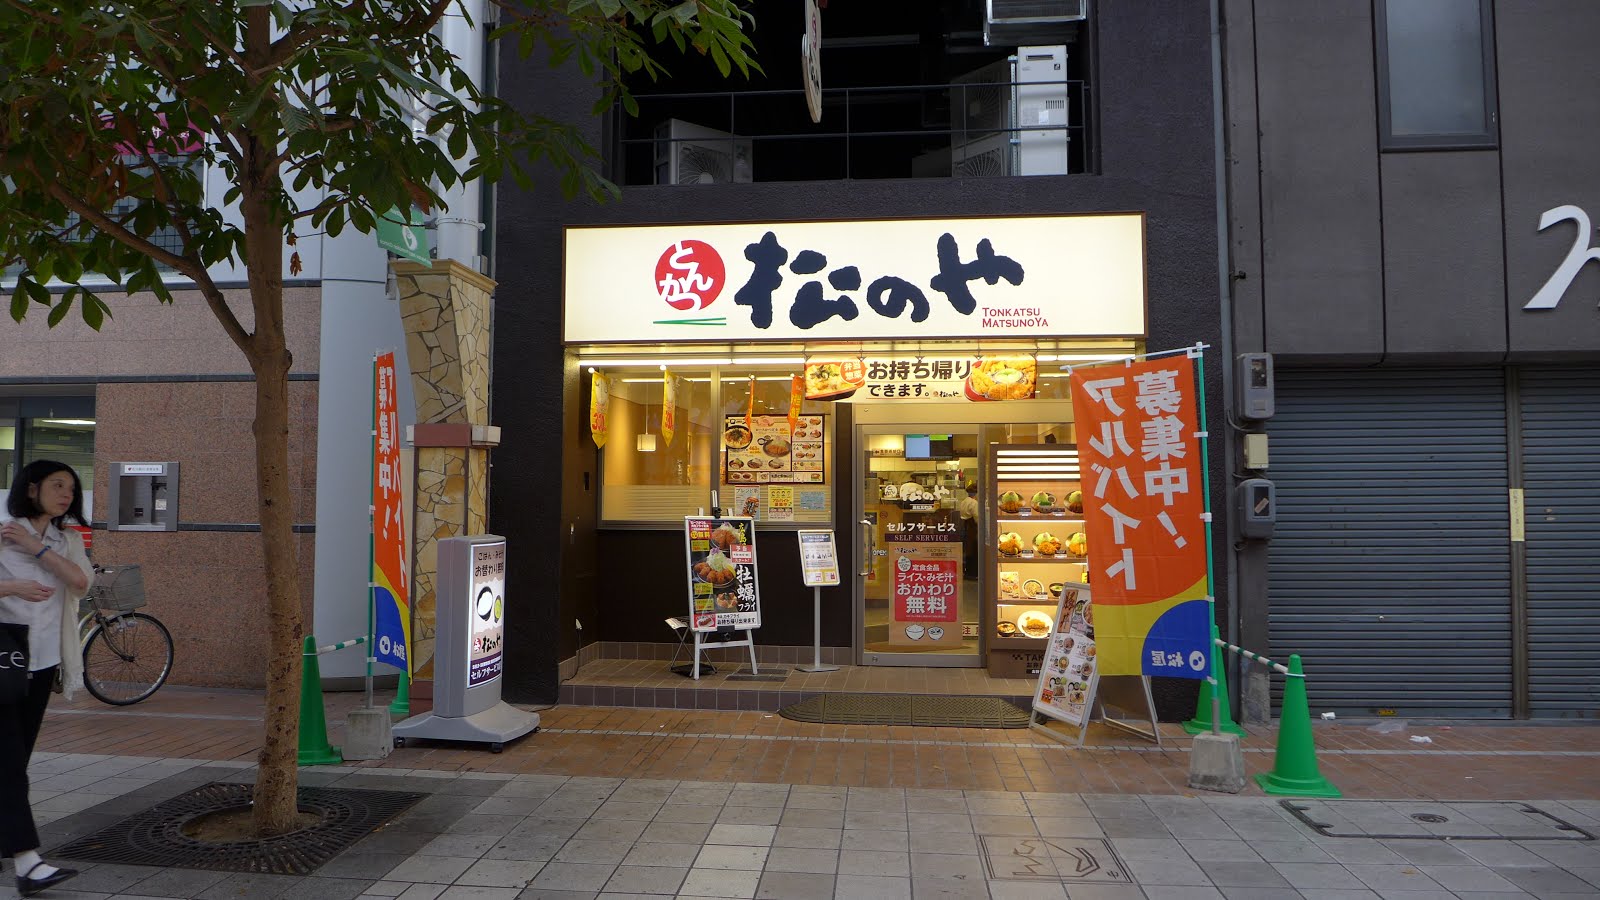 Pork in the Road: Tonkatsu Matsunoya - More filling for less yen